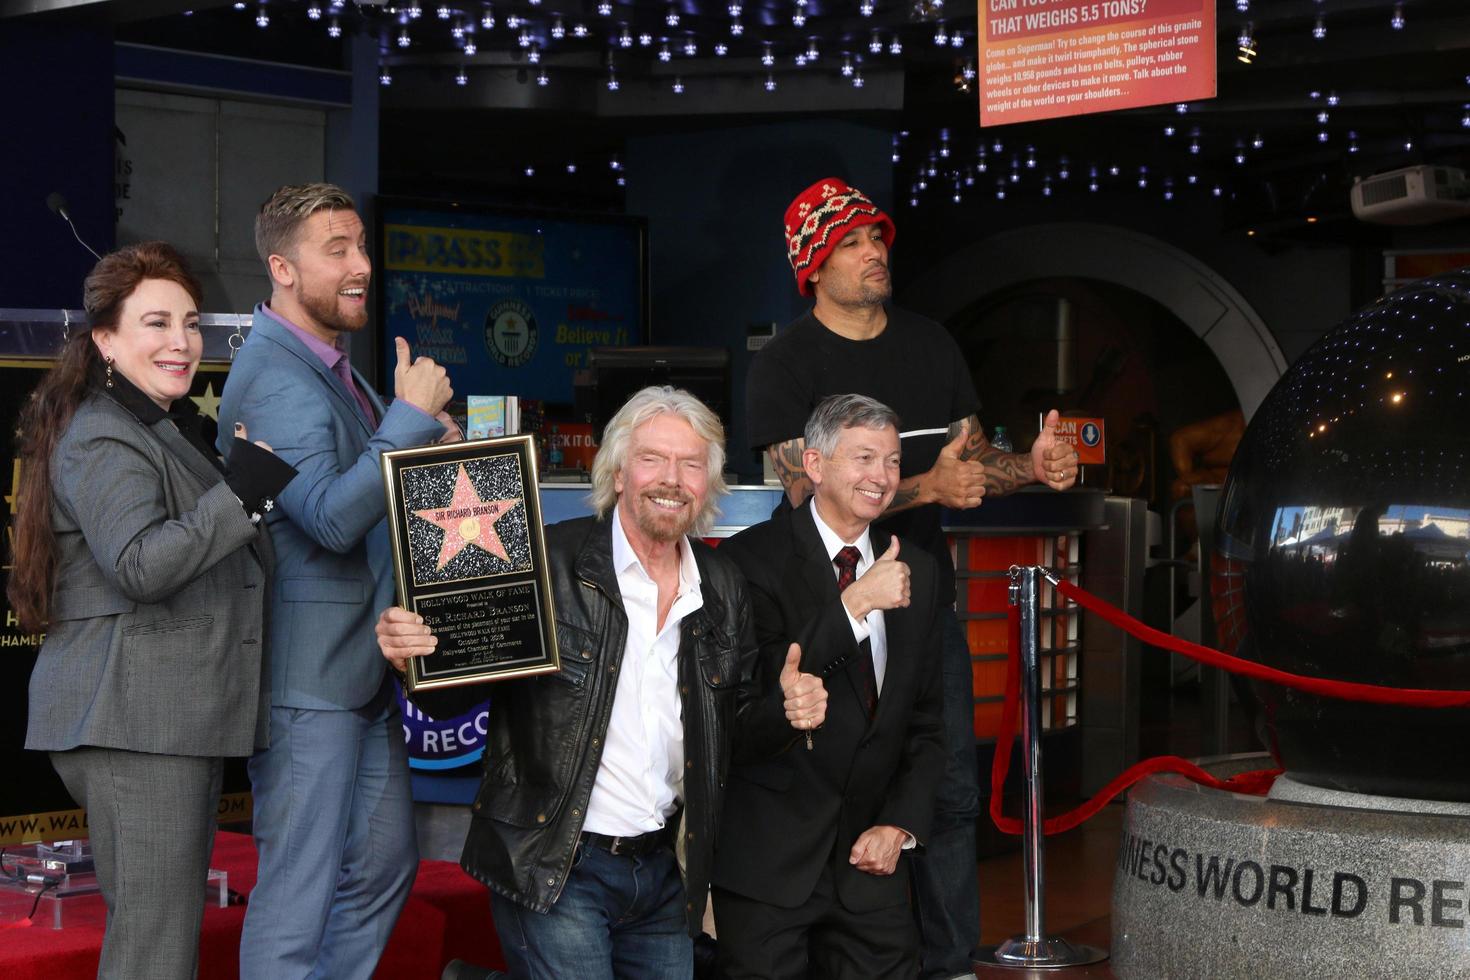 los angeles - okt 16 lans bas, herr richard Branson, ben harper på de herr richard branson stjärna ceremoni på de hollywood promenad av berömmelse på oktober 16, 2018 i los angeles, ca foto